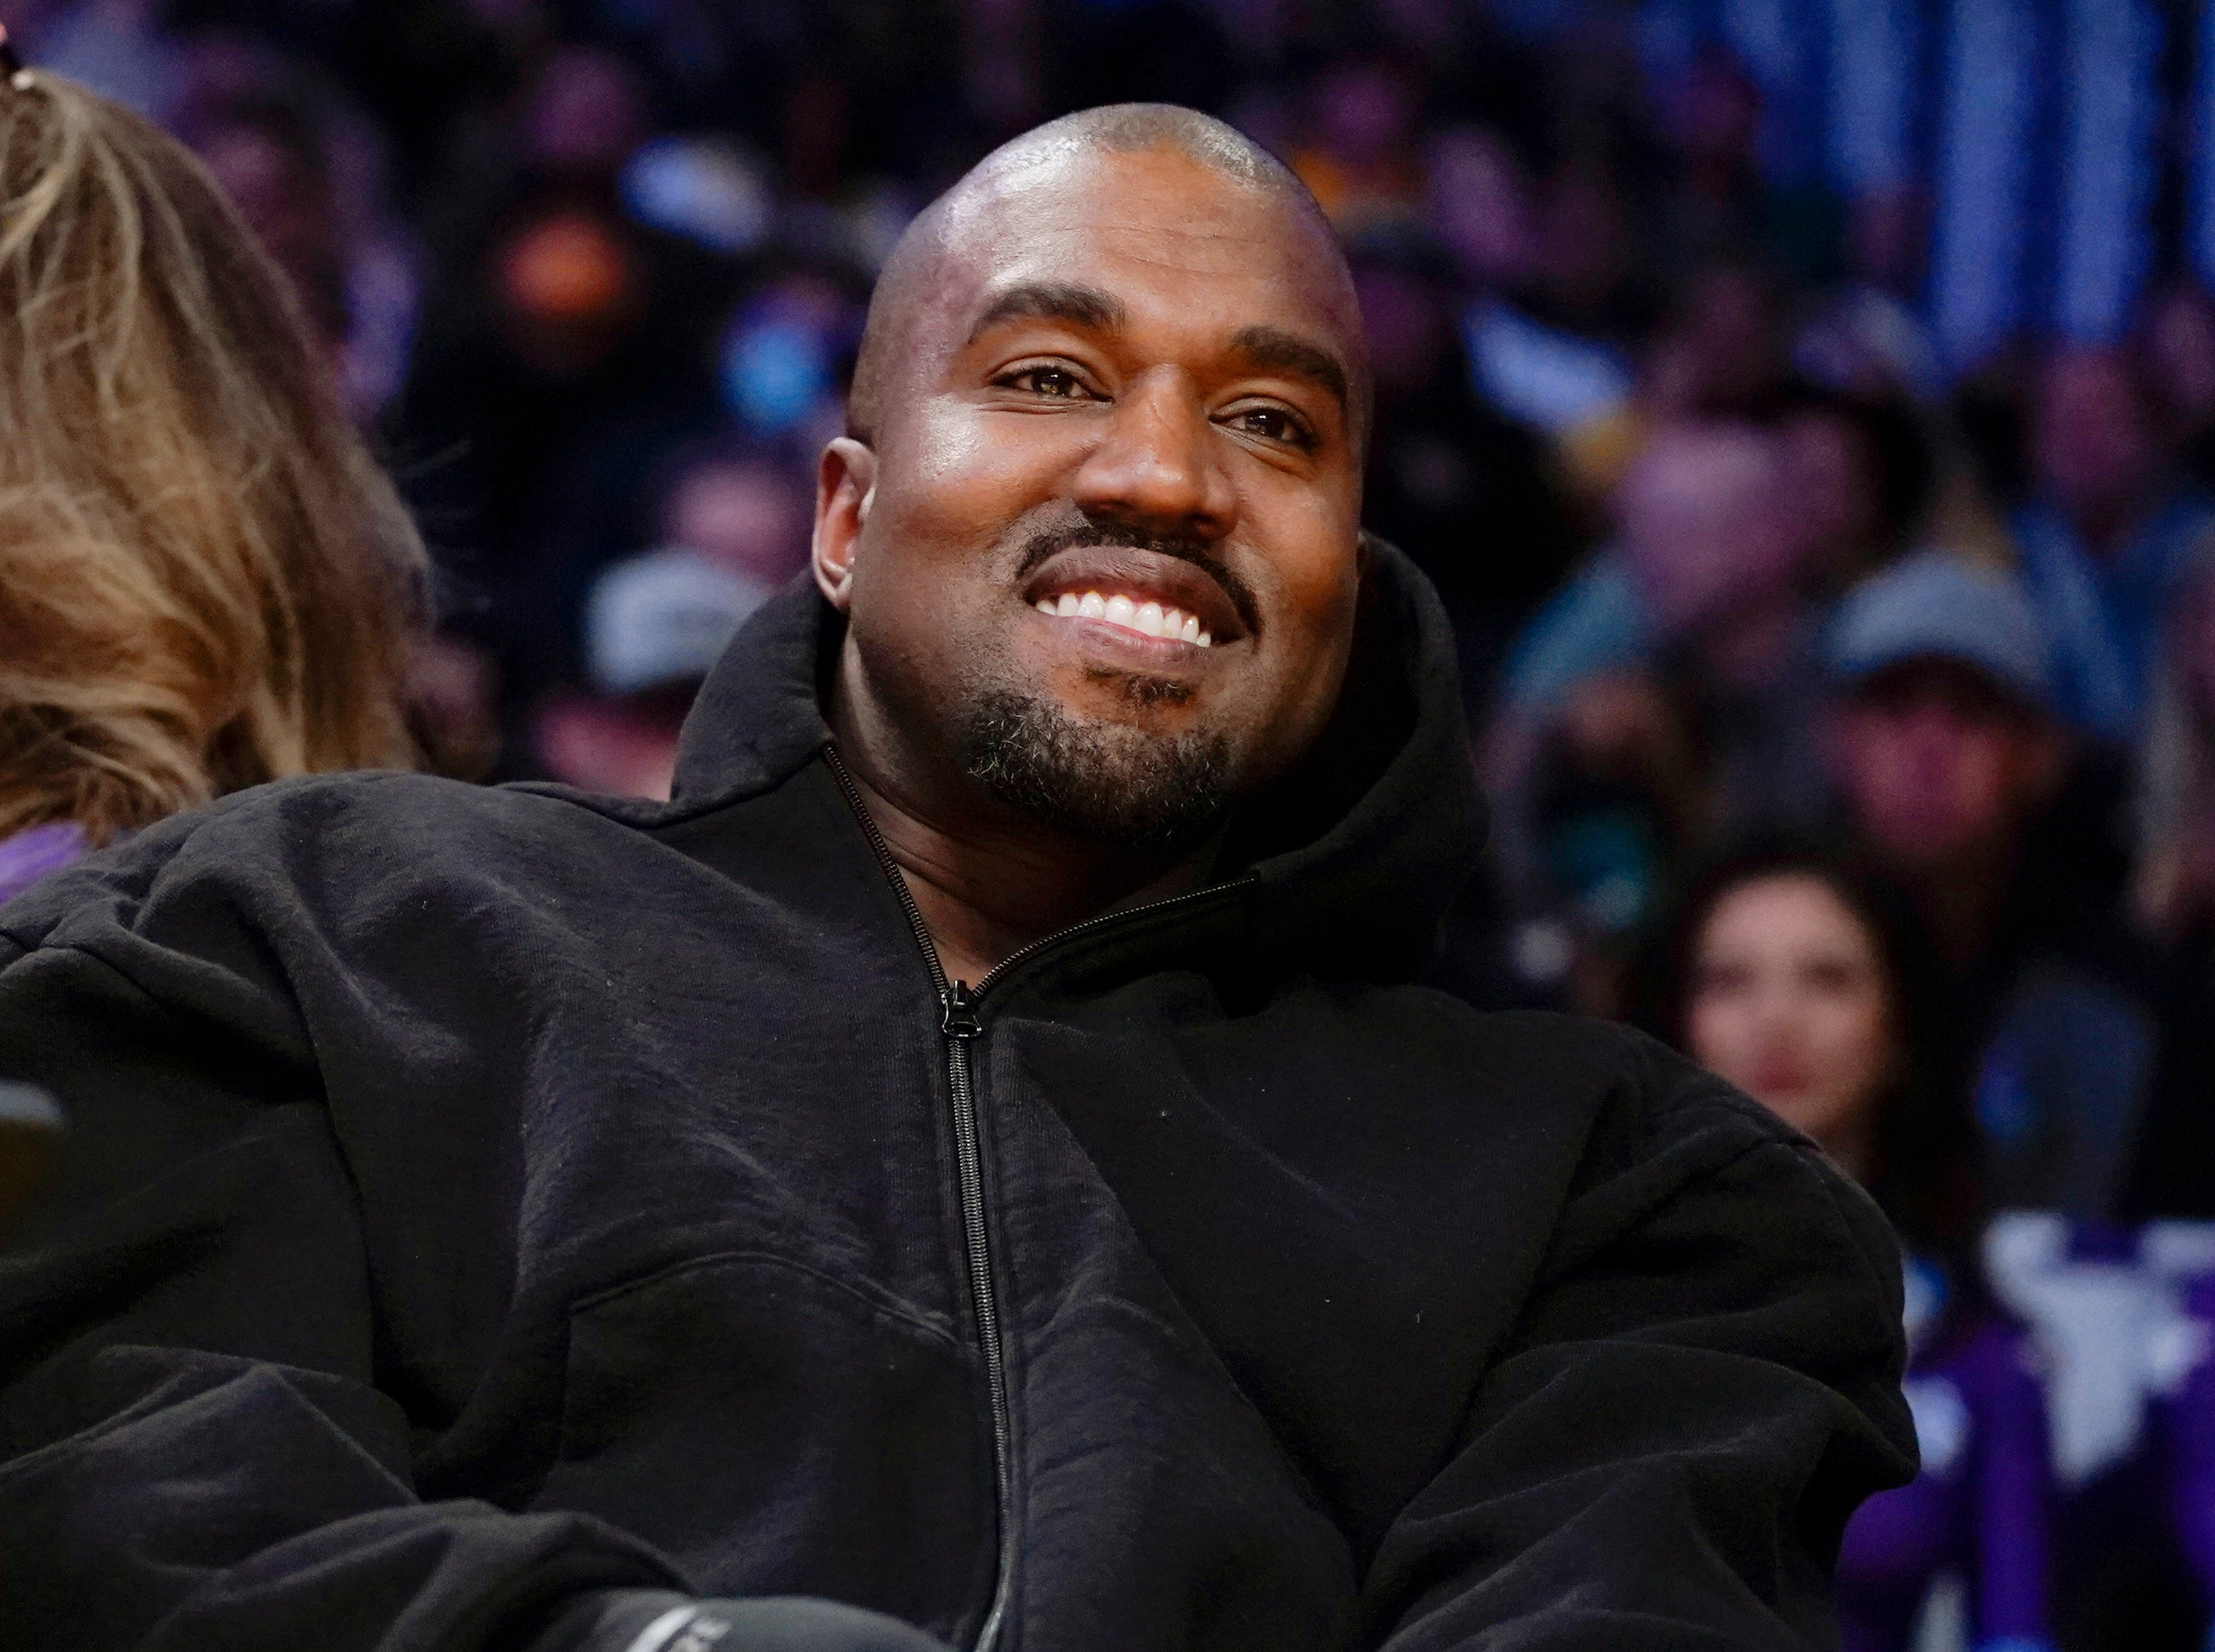 Kanye West ha generado mucha controversia por sus comentarios antisemitas